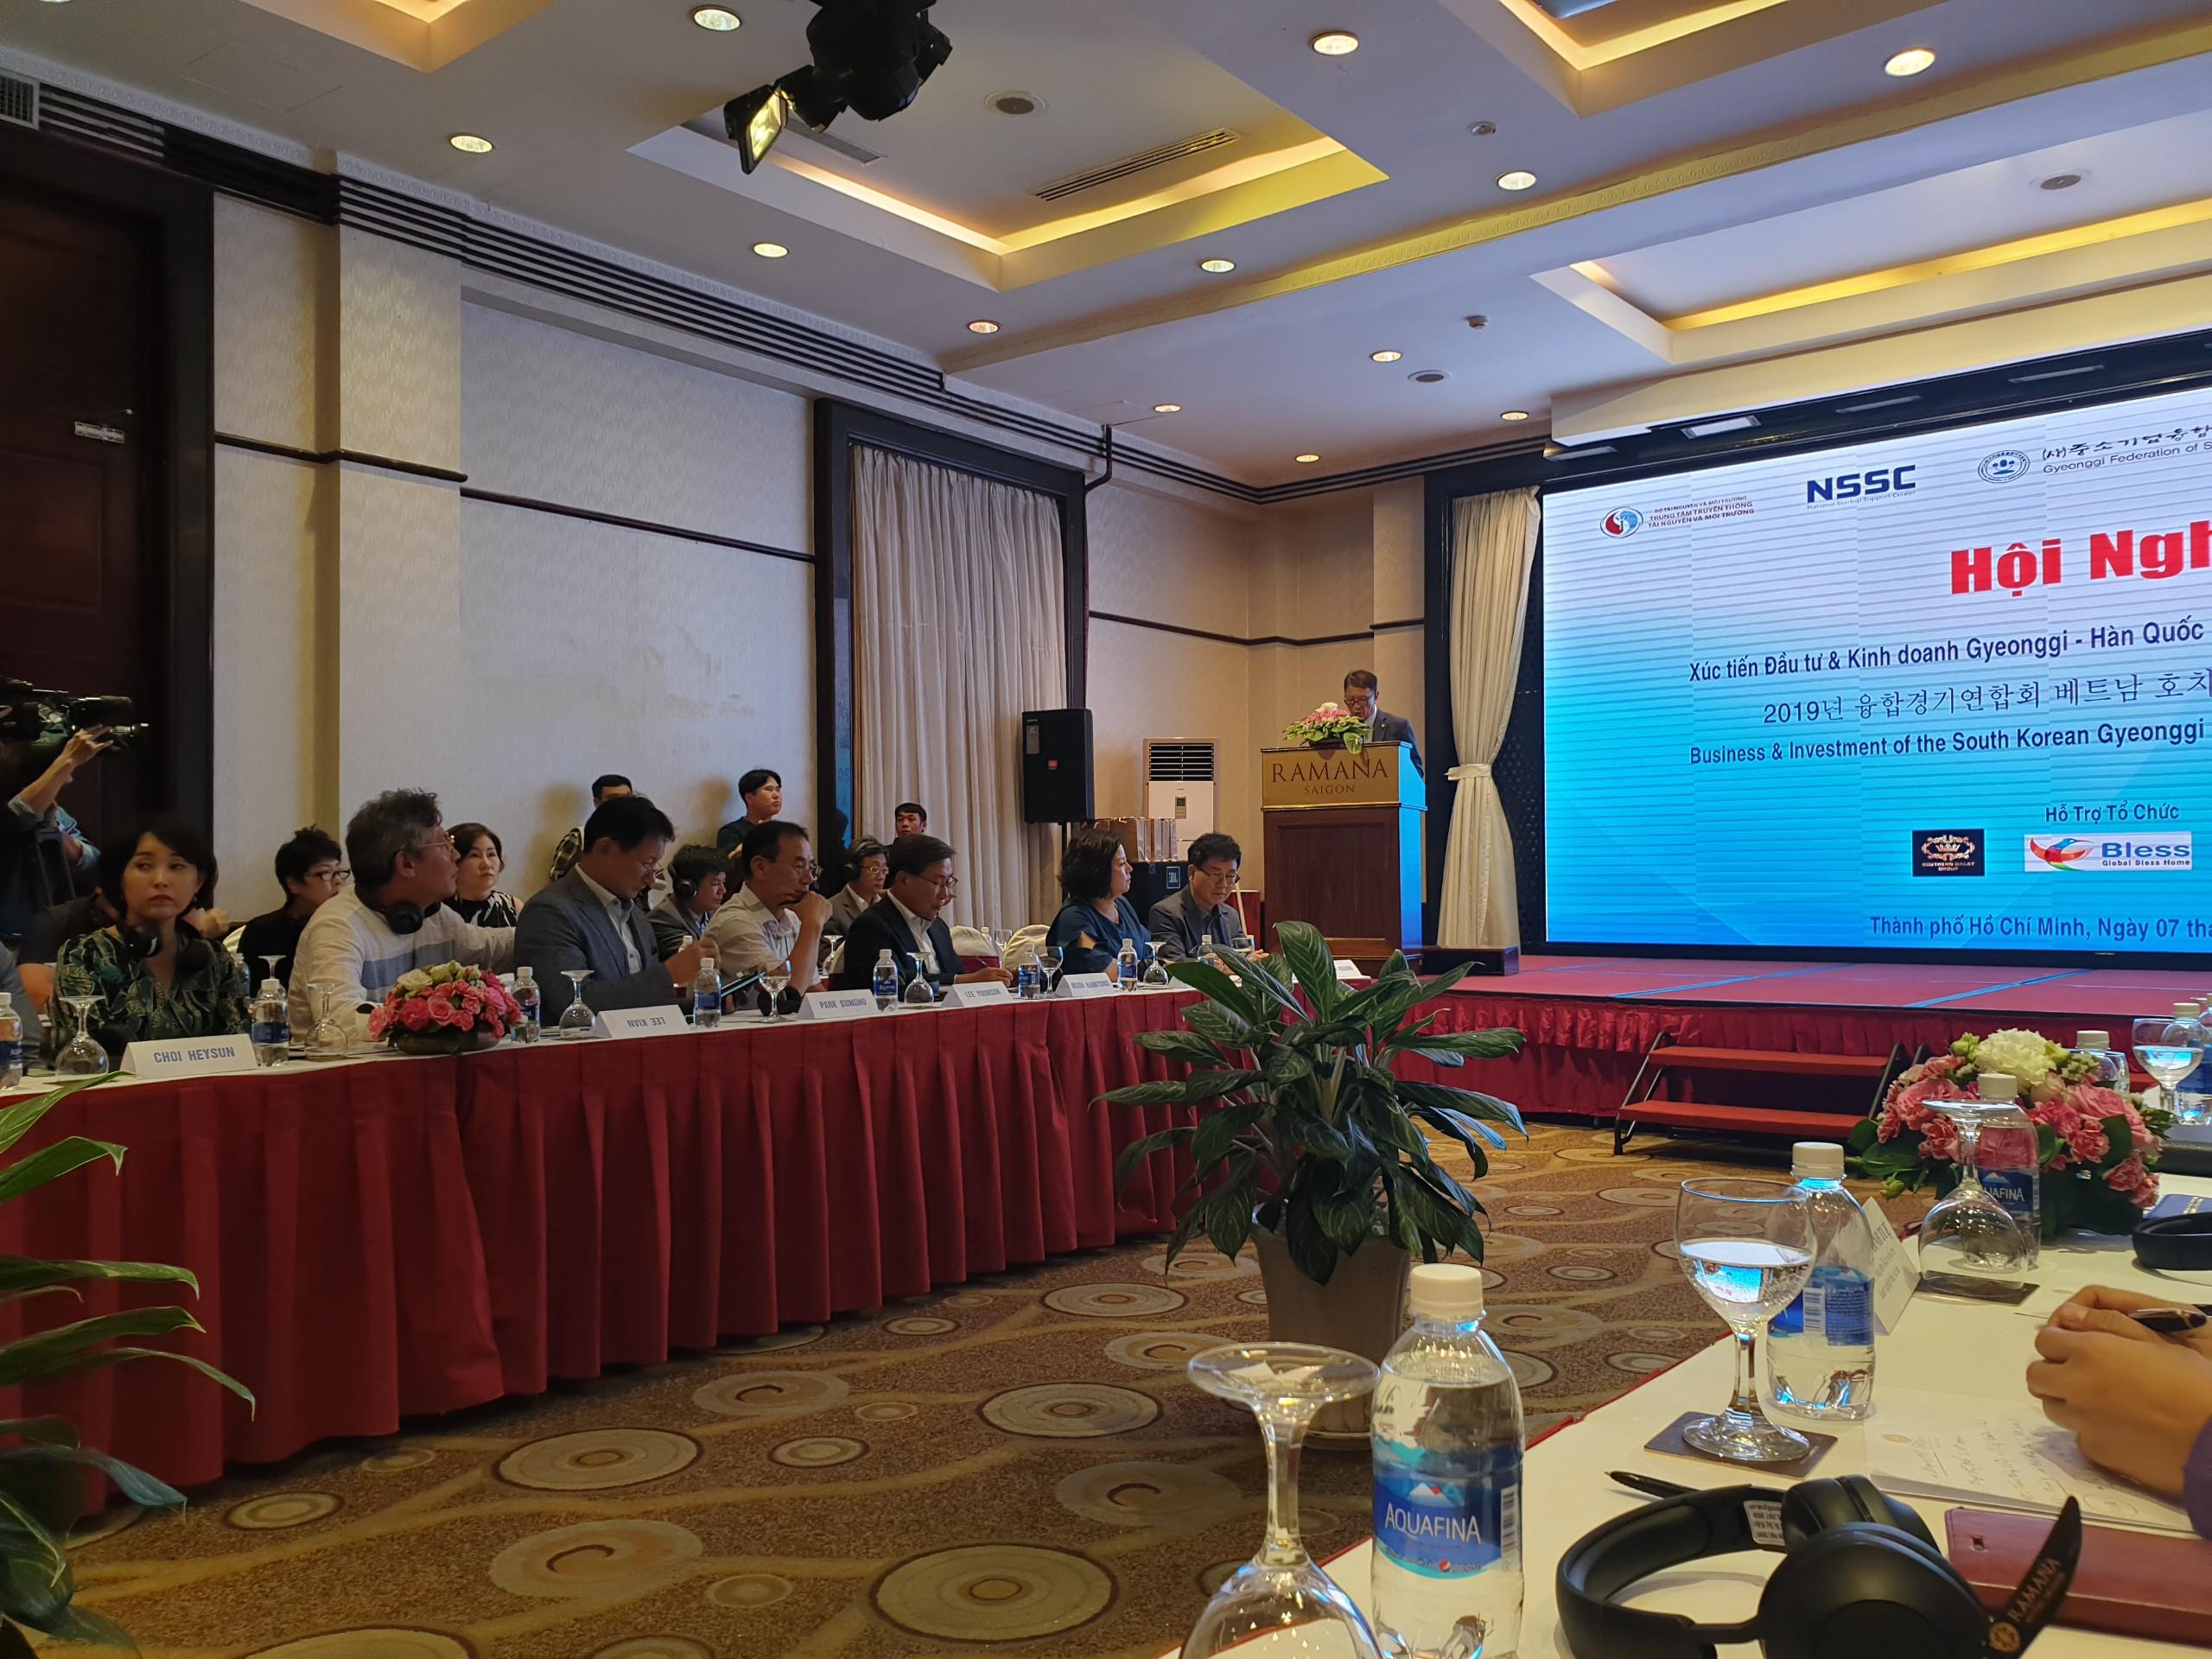 Ban Lãnh đạo Vietpearl Group tham gia Hội nghị xúc tiến và kinh doanh tỉnh Gyeonggi (Hàn Quốc) vào Thành phố Hồ Chí Minh năm 2019.